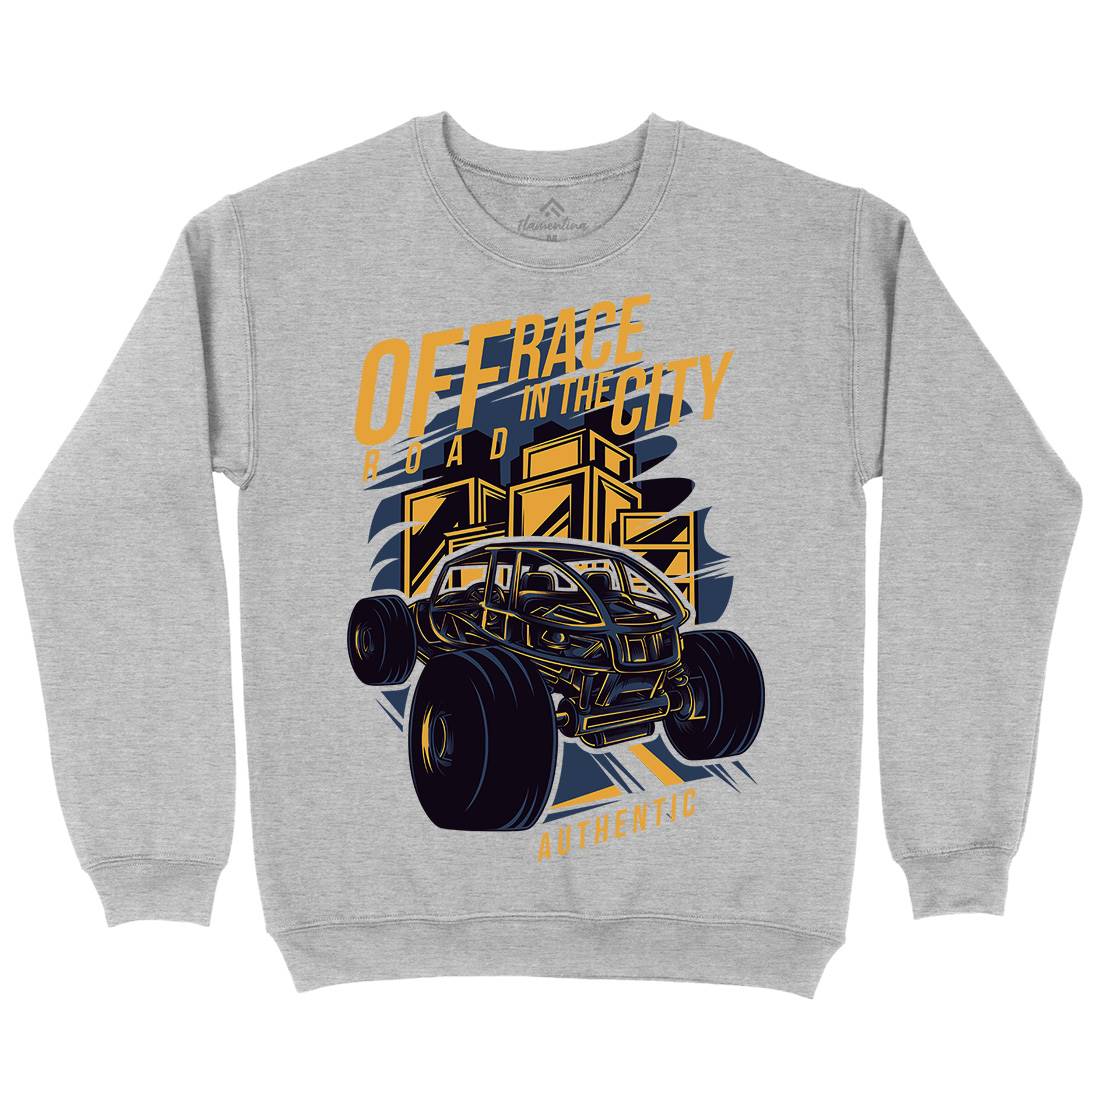 Race In The City Kids Crew Neck Sweatshirt Cars D687